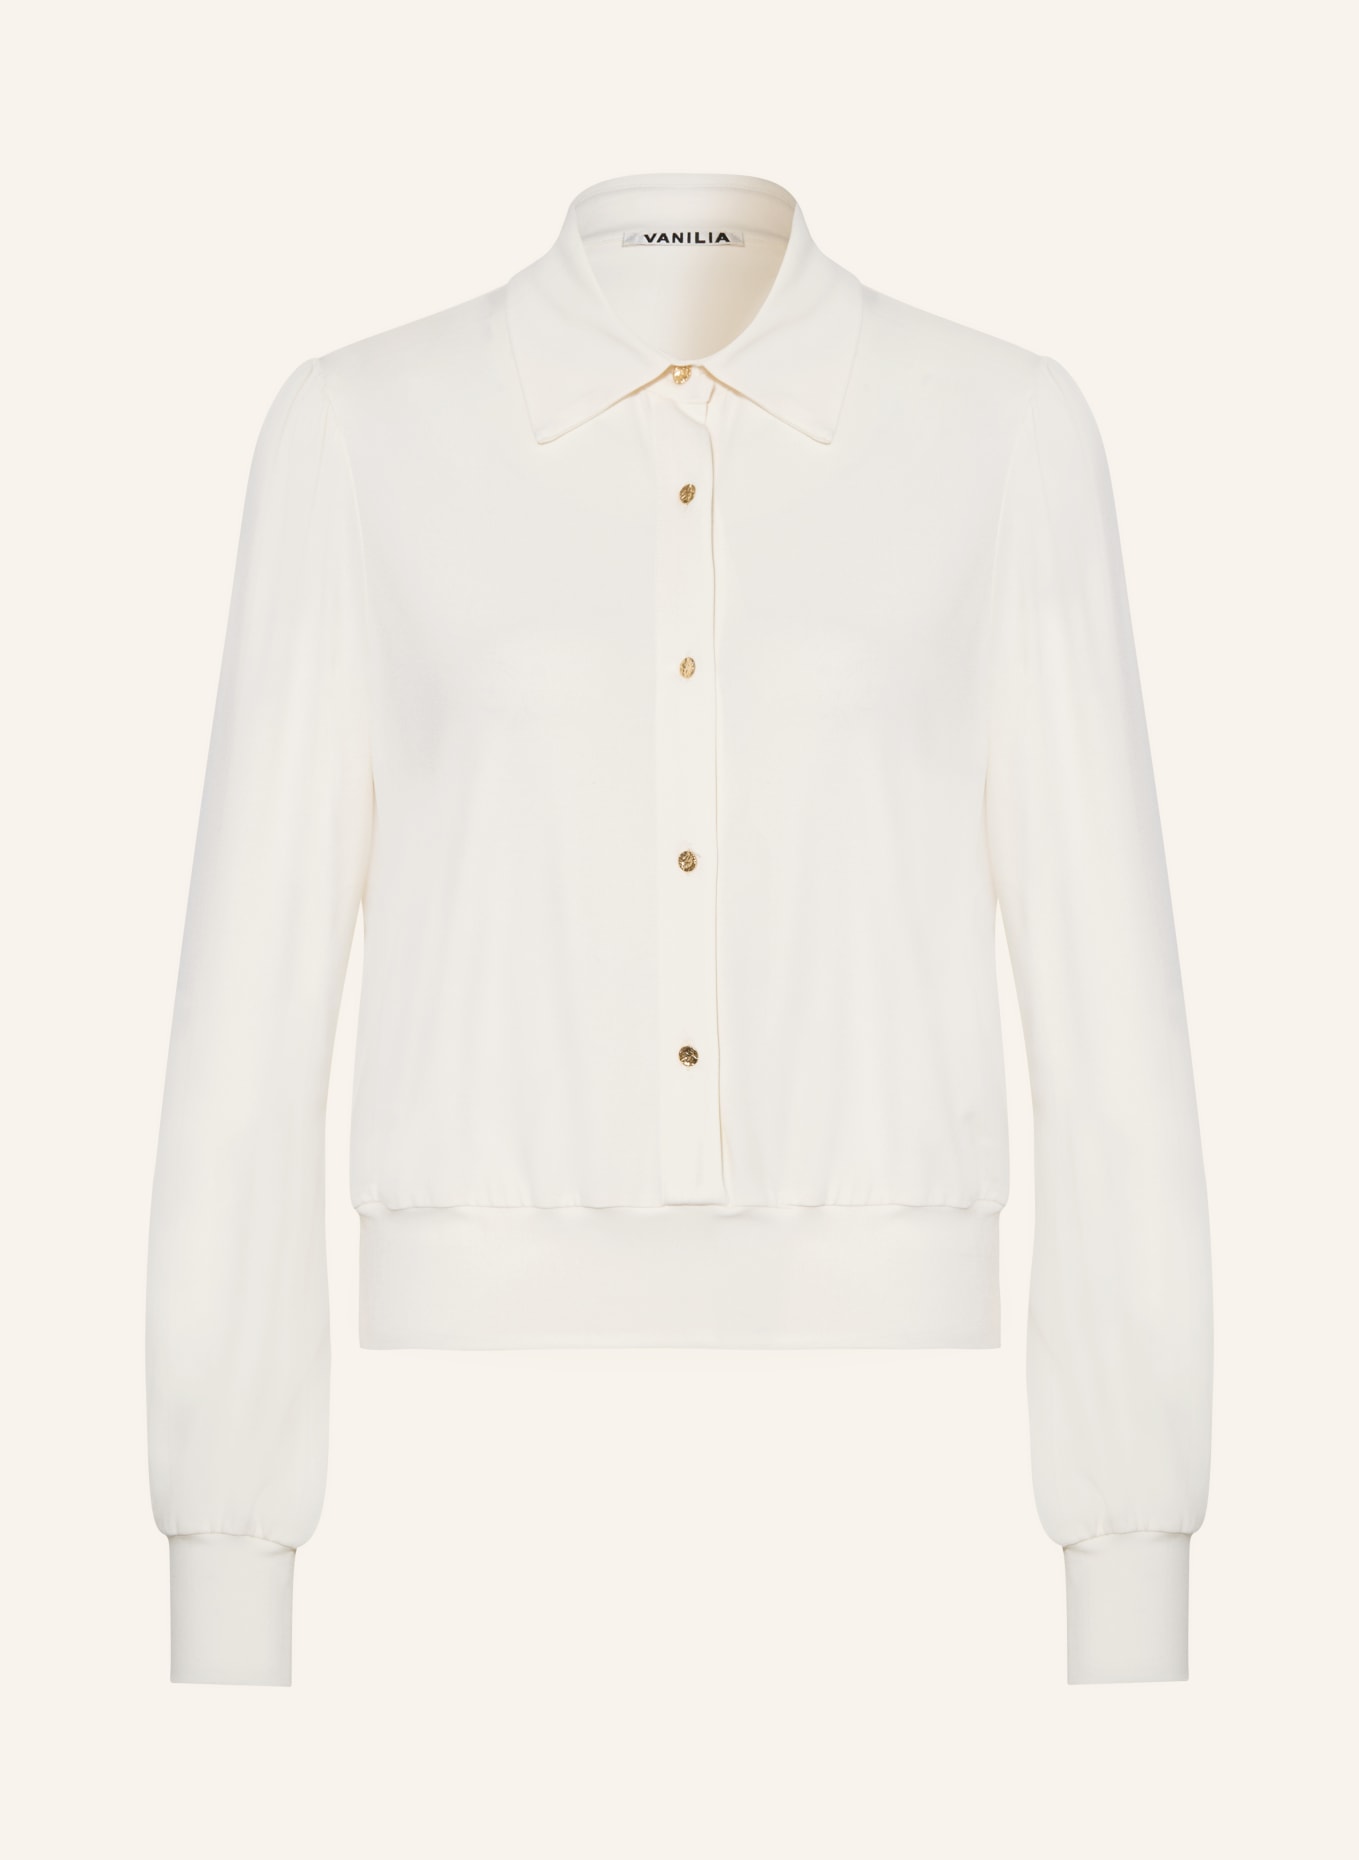 VANILIA Shirt blouse, Color: ECRU (Image 1)